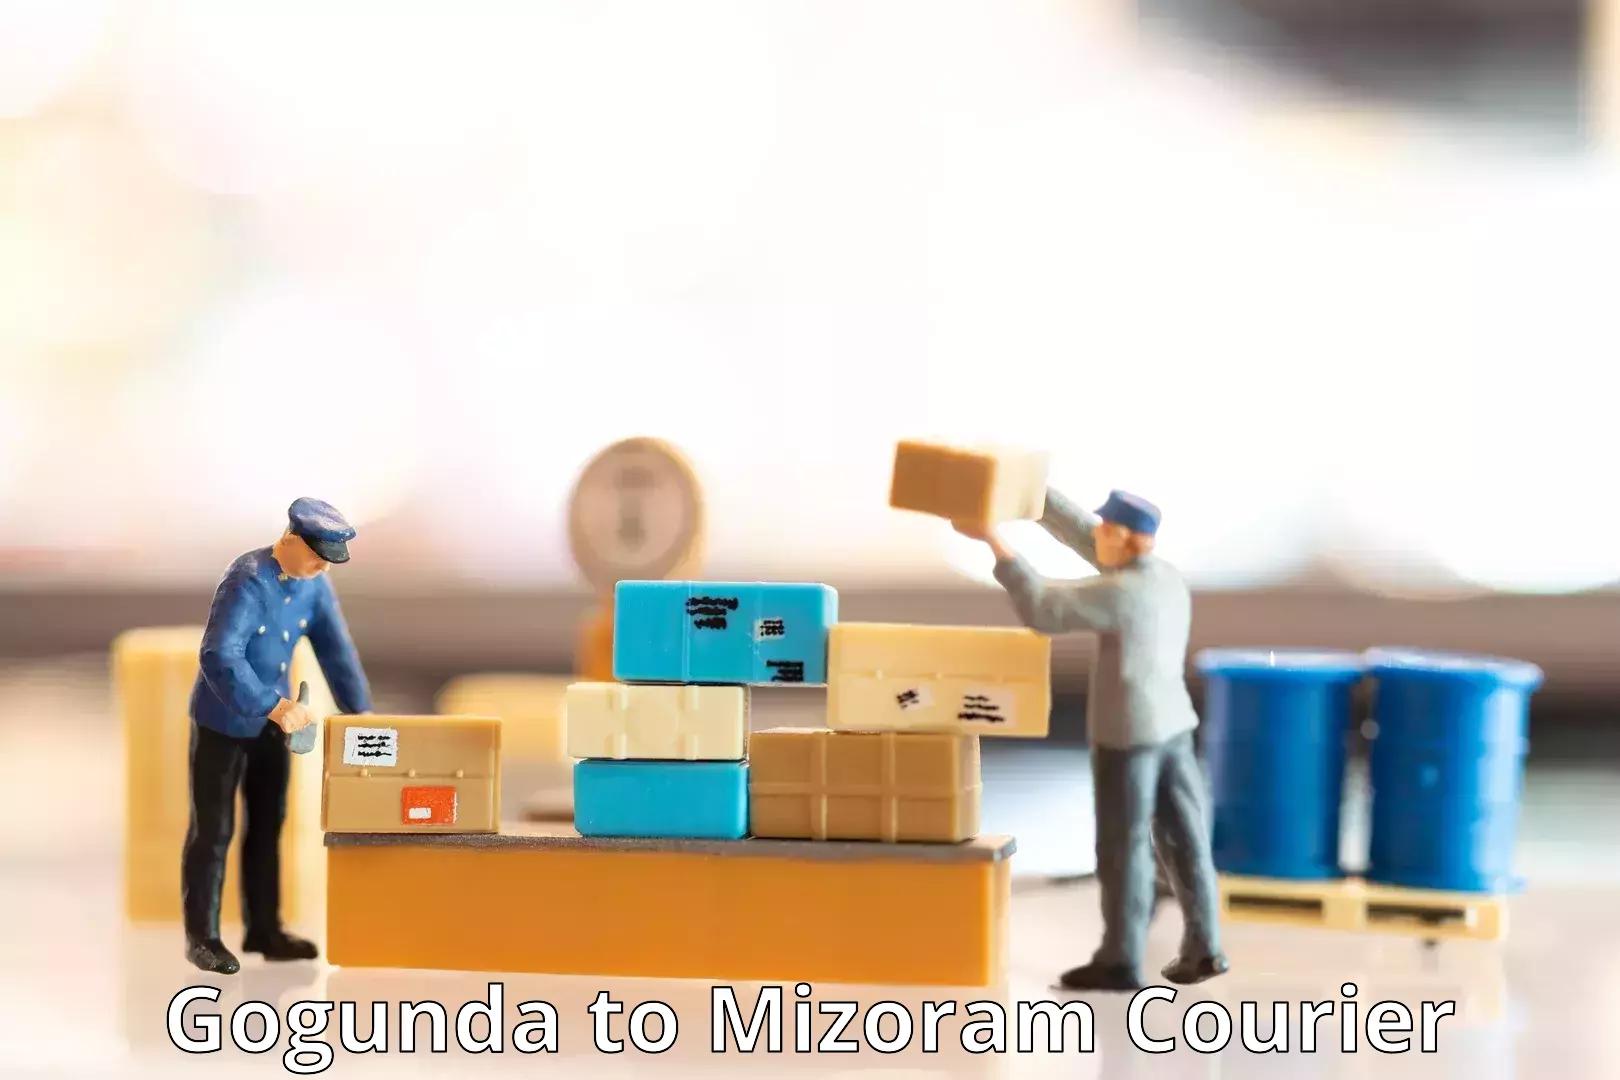 Global parcel delivery Gogunda to Mizoram